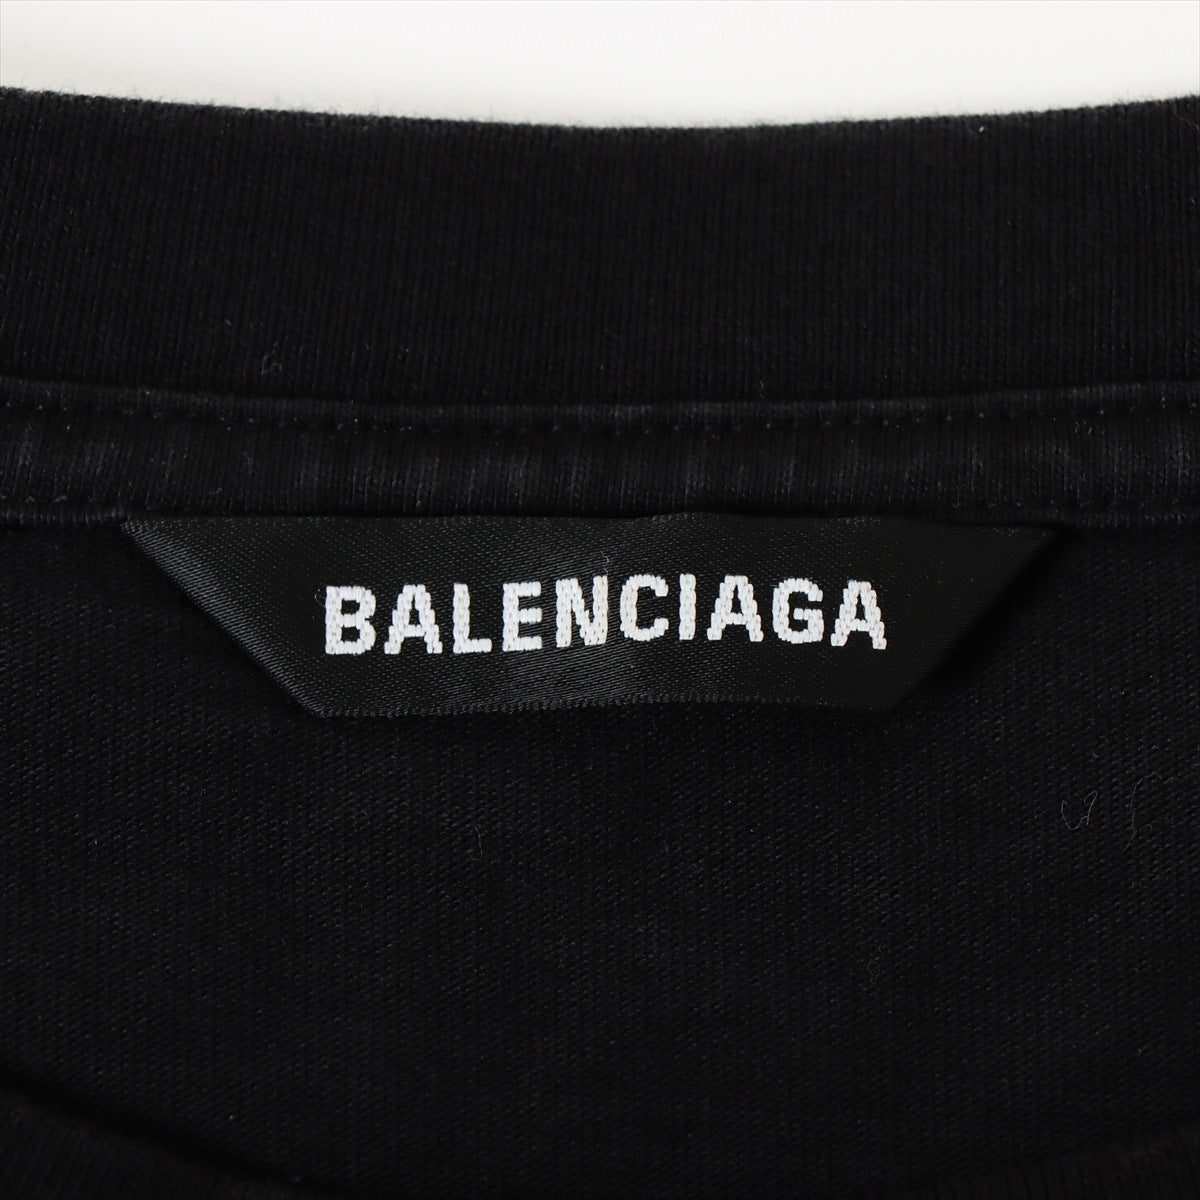 バレンシアガ 20年 コットン Tシャツ M メンズ ブラック  641614